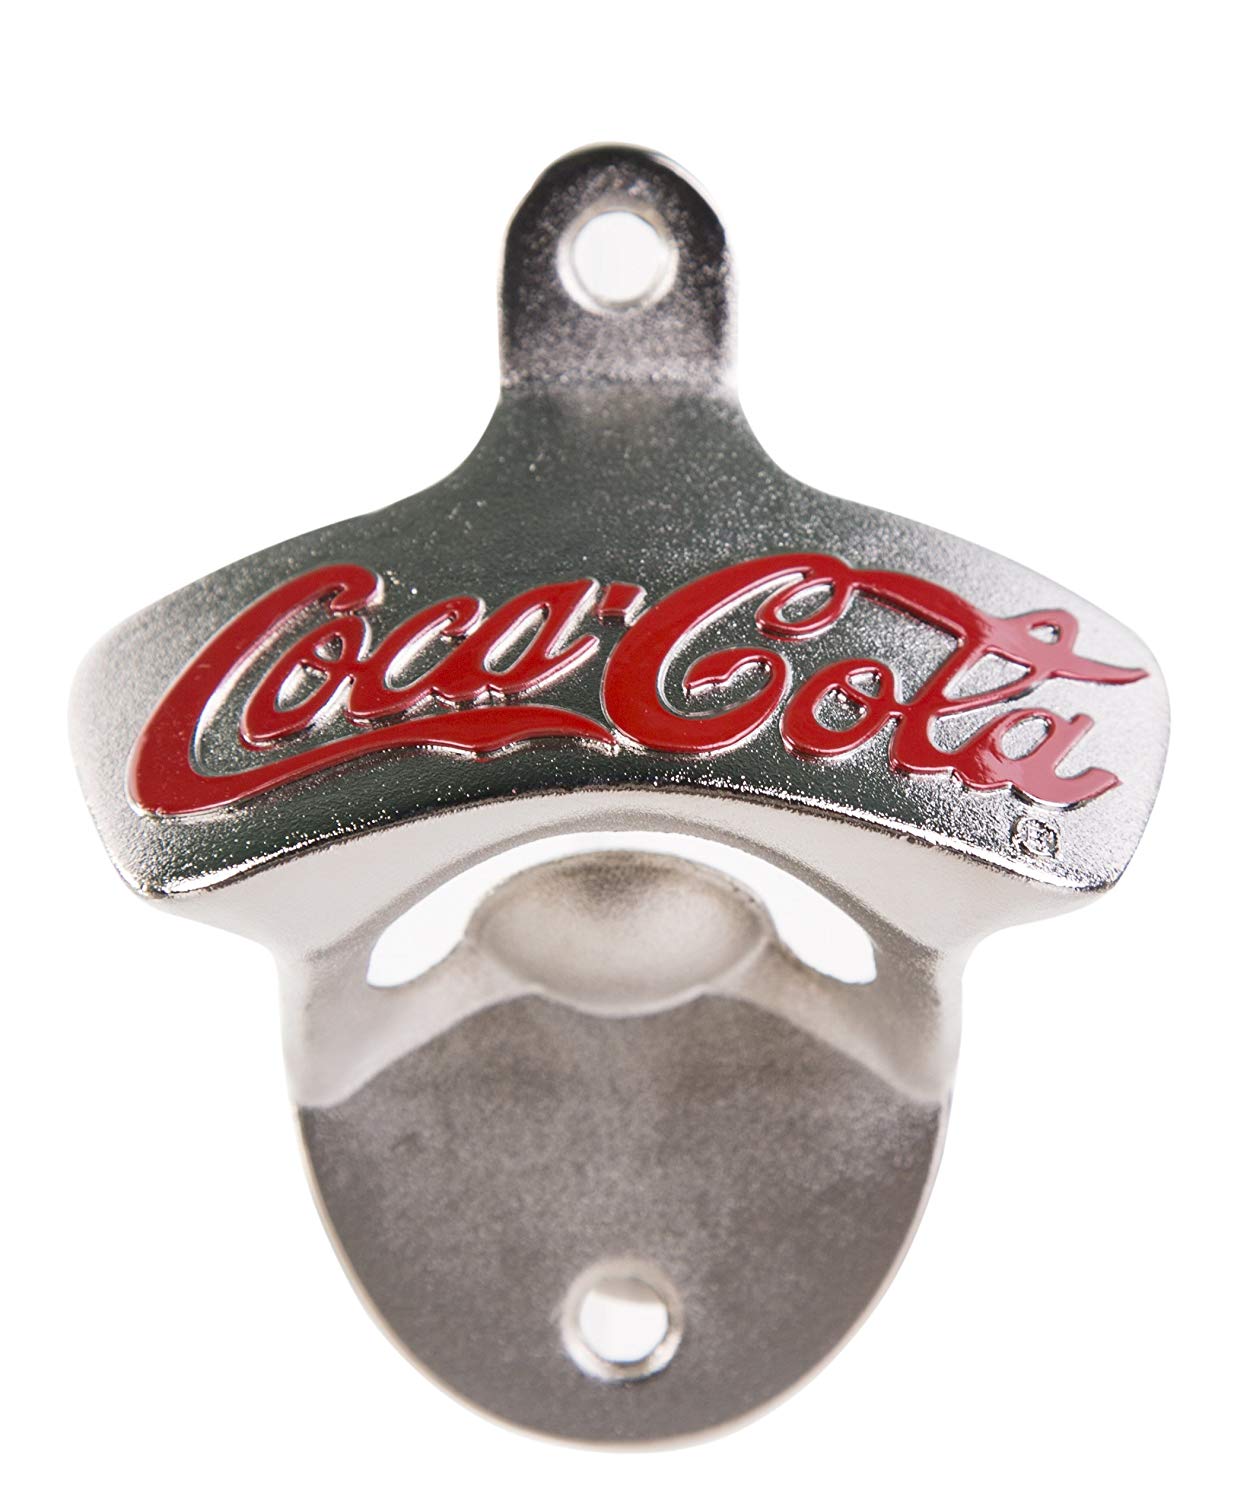 Metal wall mounted iconic Coca Cola Bottle opener